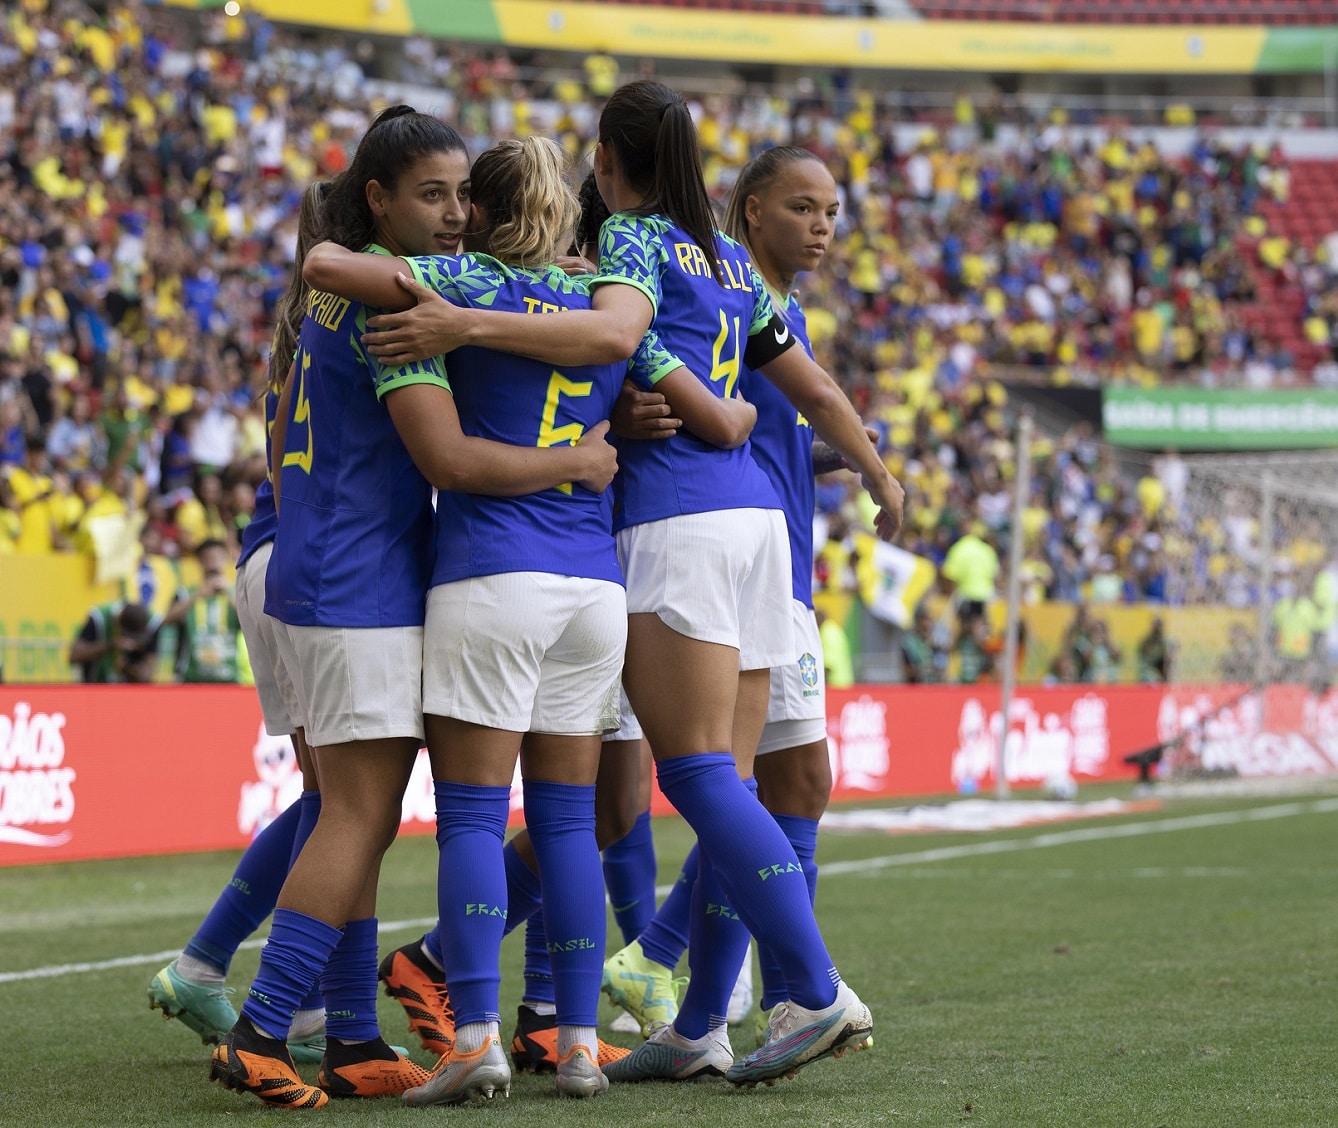 Copa do Mundo Feminina: Adufepe segue expediente da UFPE durante jogos do  Brasil - Associação dos Docentes da UFPE